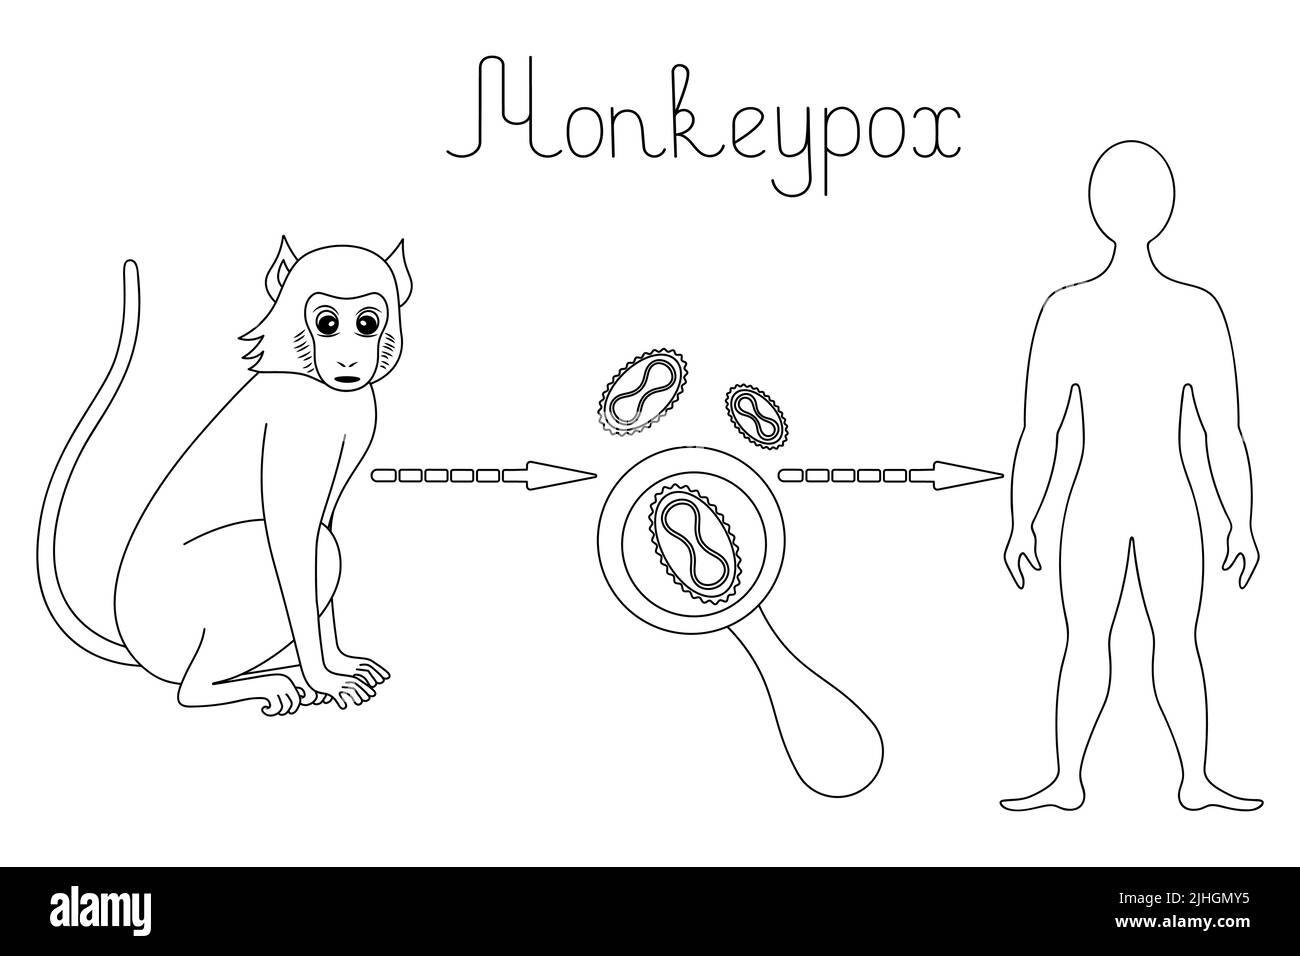 Monkey – virus del vaiolo – umano, uno schema di infezione umana con il virus del vaiolo di scimmia nello stile di scarabocchi Illustrazione Vettoriale